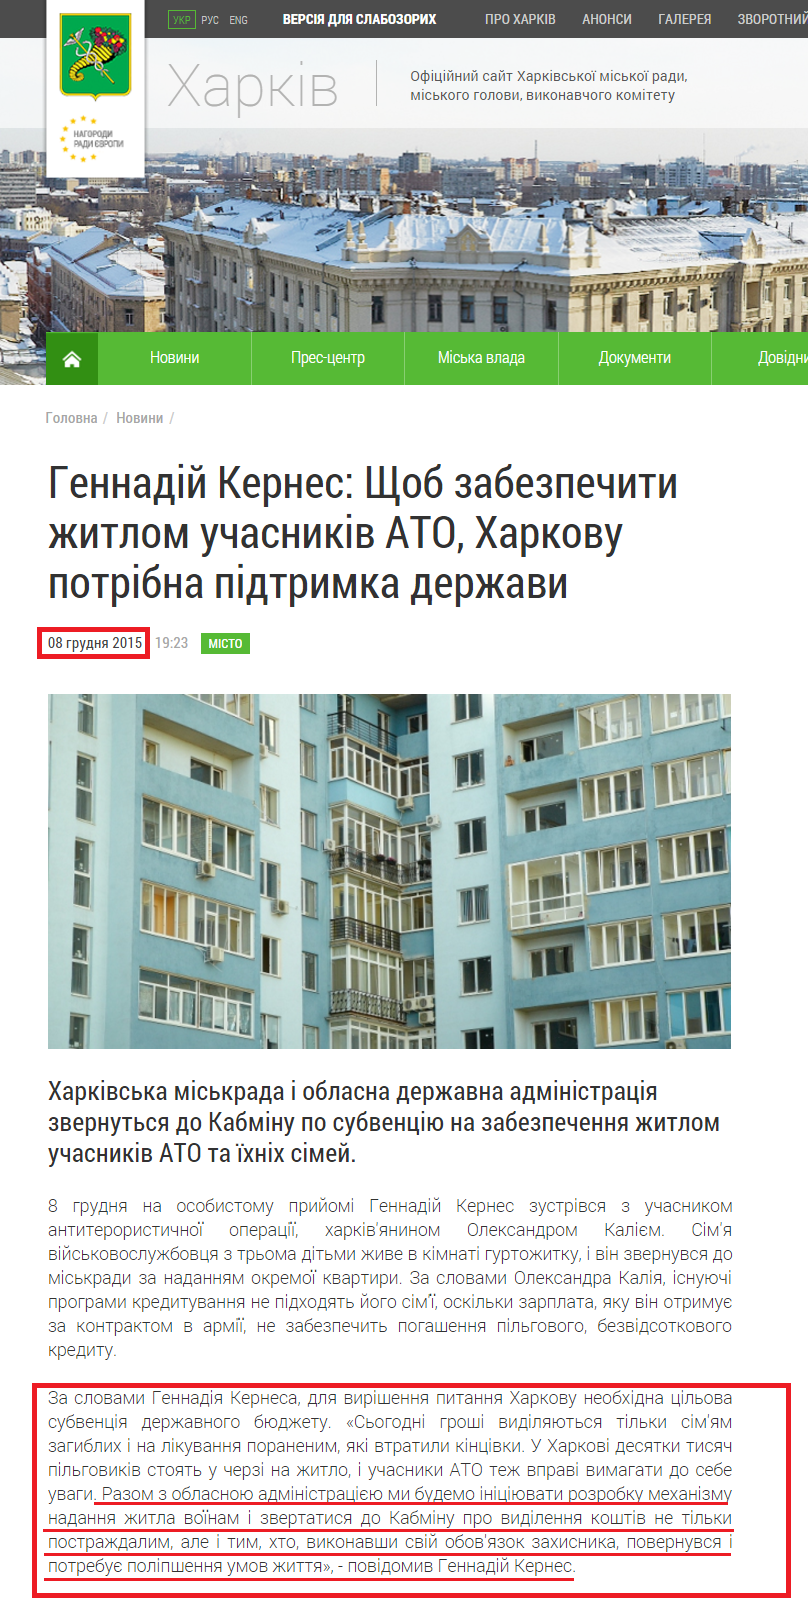 http://www.city.kharkov.ua/uk/publication/gennadiy-kernes-schob-zabezpechiti-zhitlom-uchasnikiv-ato-kharkovu-potribna-pidtrimka-derzhavi-30205.html